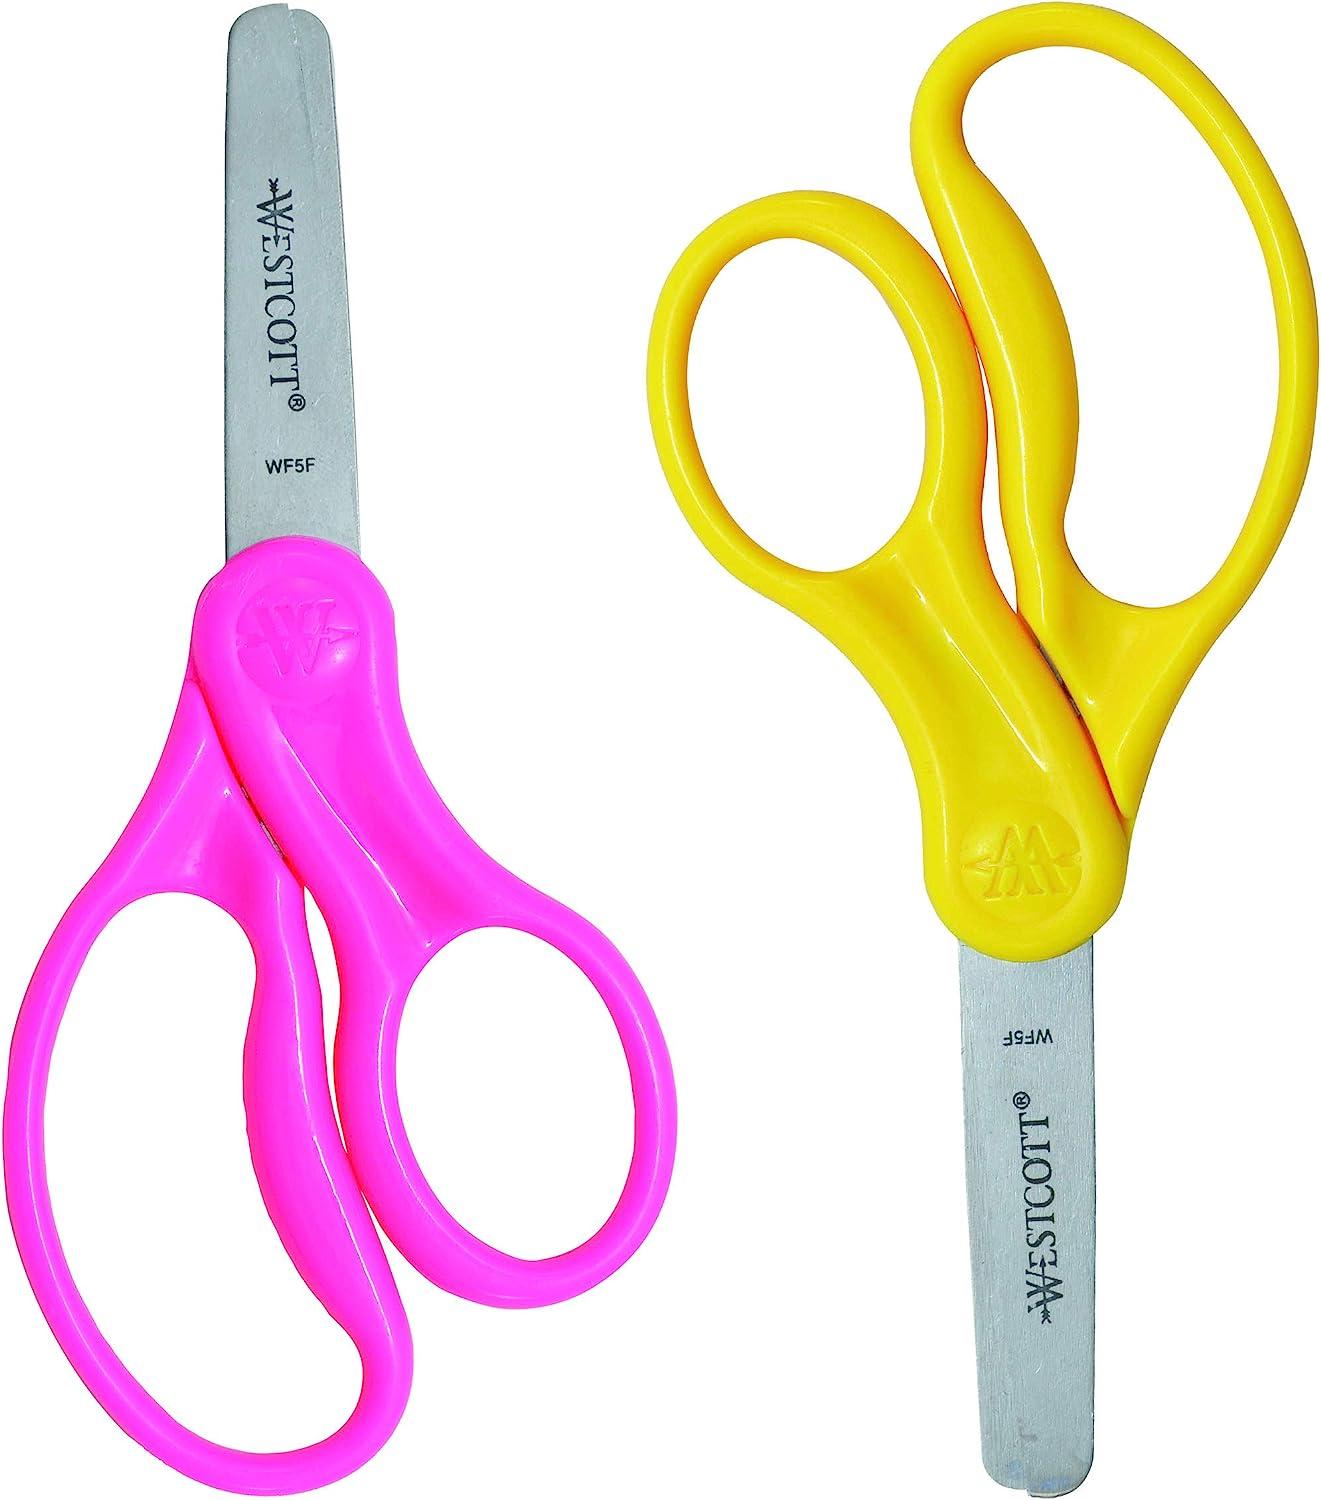 Left Blunt Tip Children's Scissors, Grouped Items